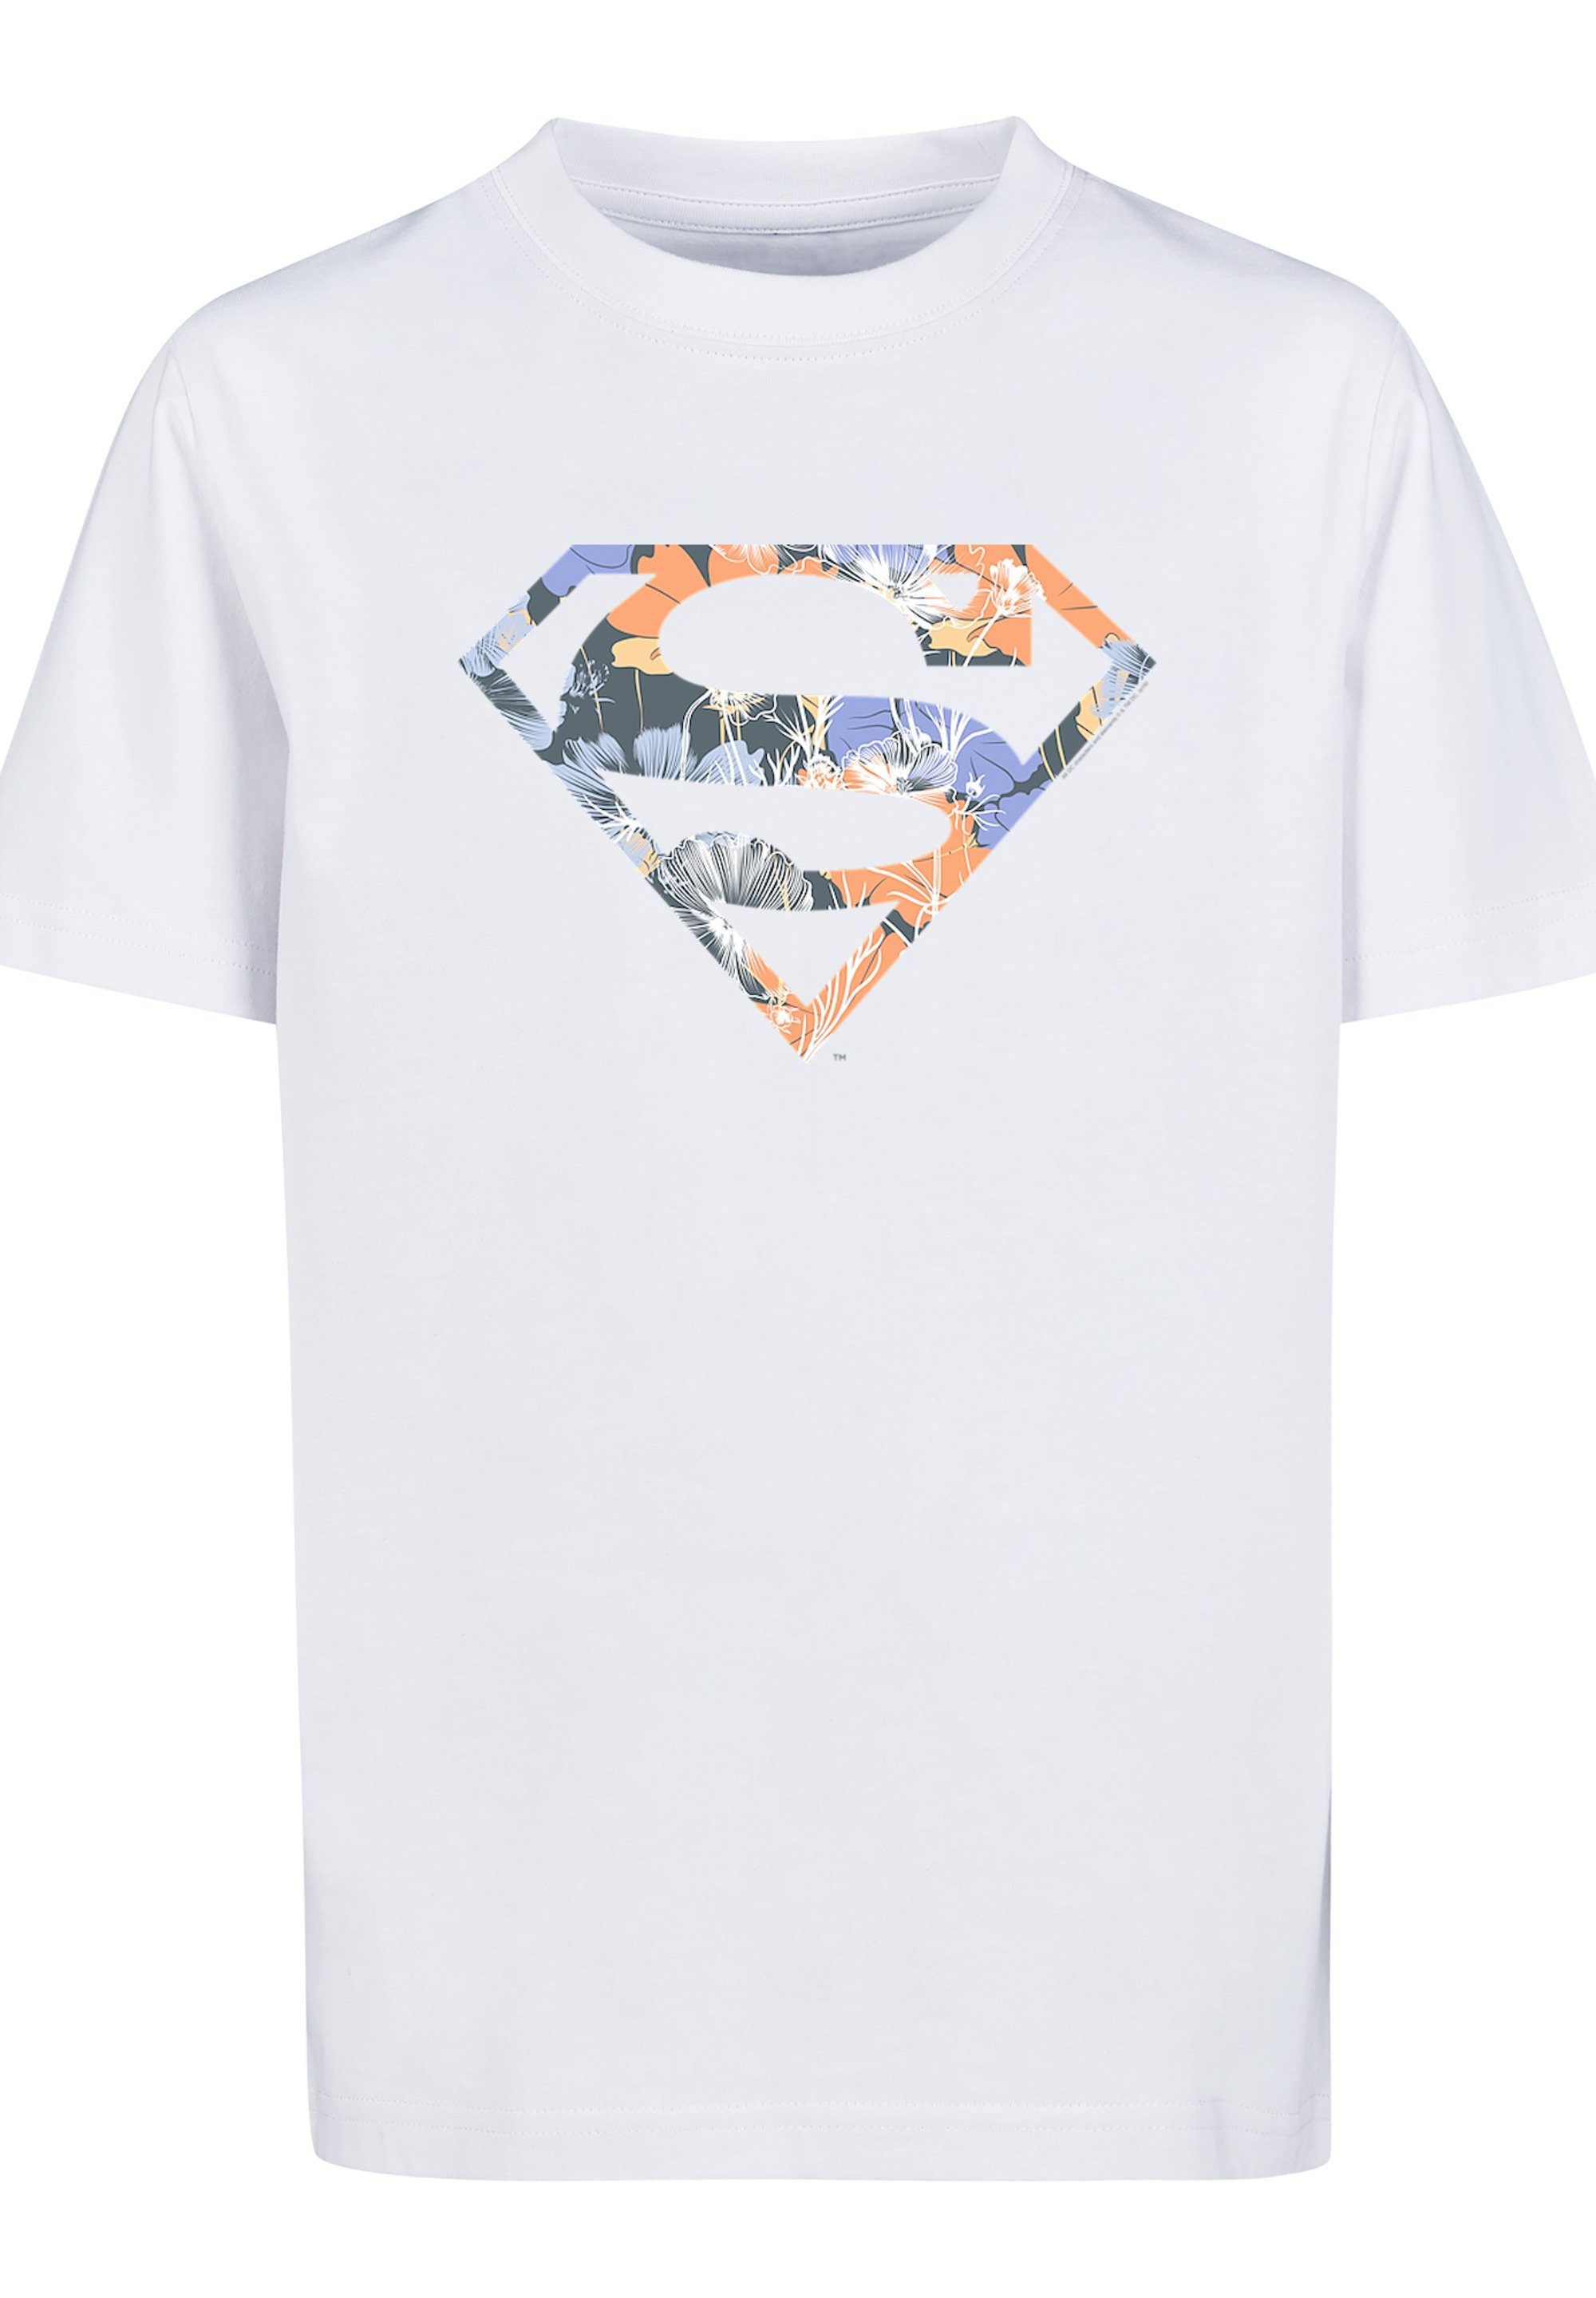 F4NT4STIC T-Shirt T-Shirt DC Comics Kinder,Premium Merch,Jungen,Mädchen,Bedruckt Unisex Logo Superheld Superman weiß Floral